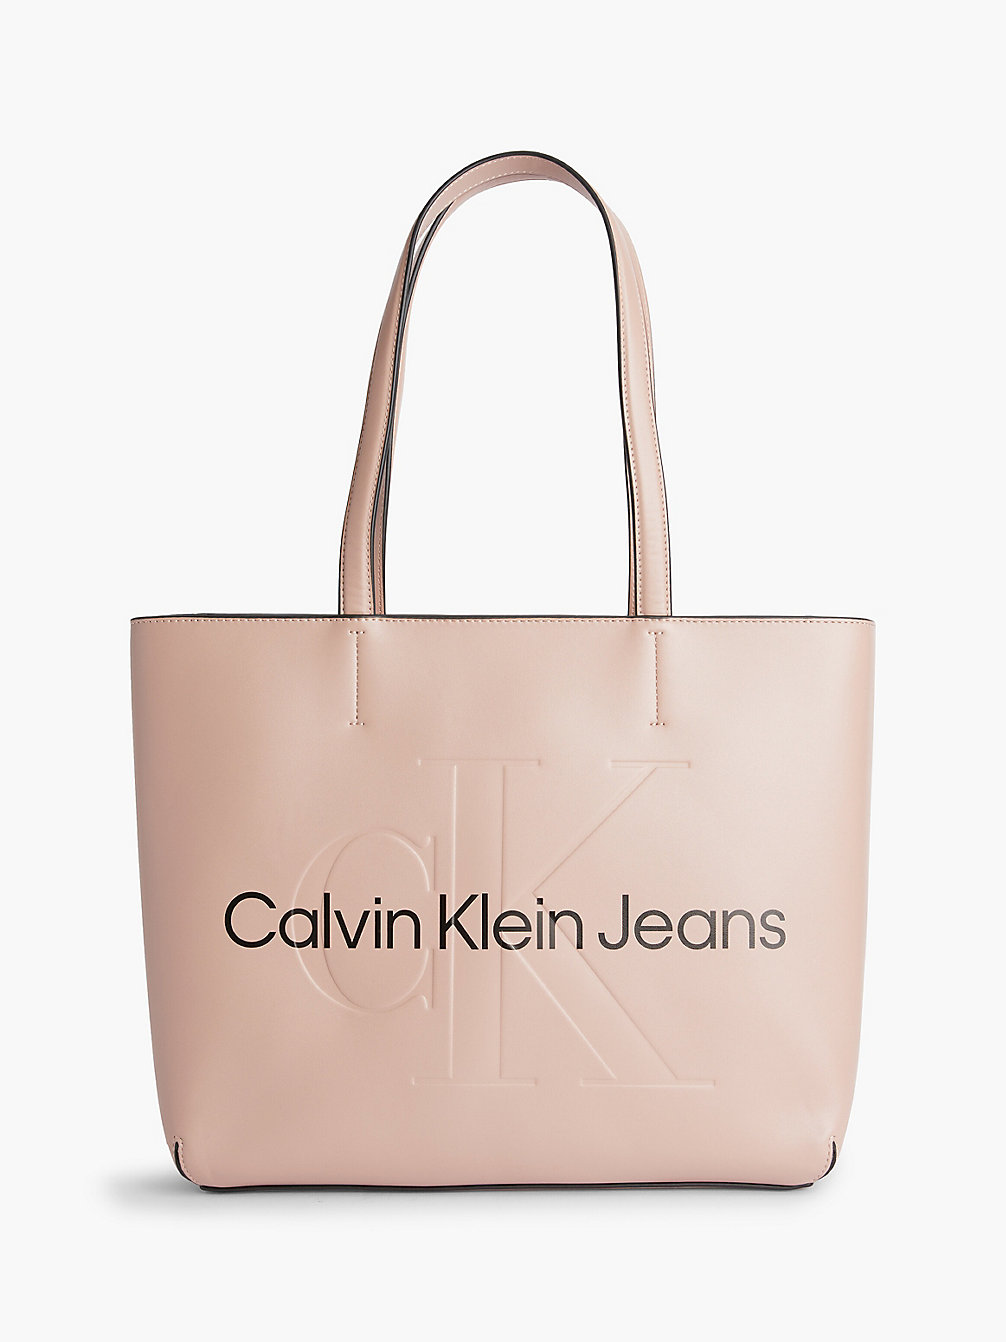 DARK BLUSH Sac Cabas undefined femmes Calvin Klein